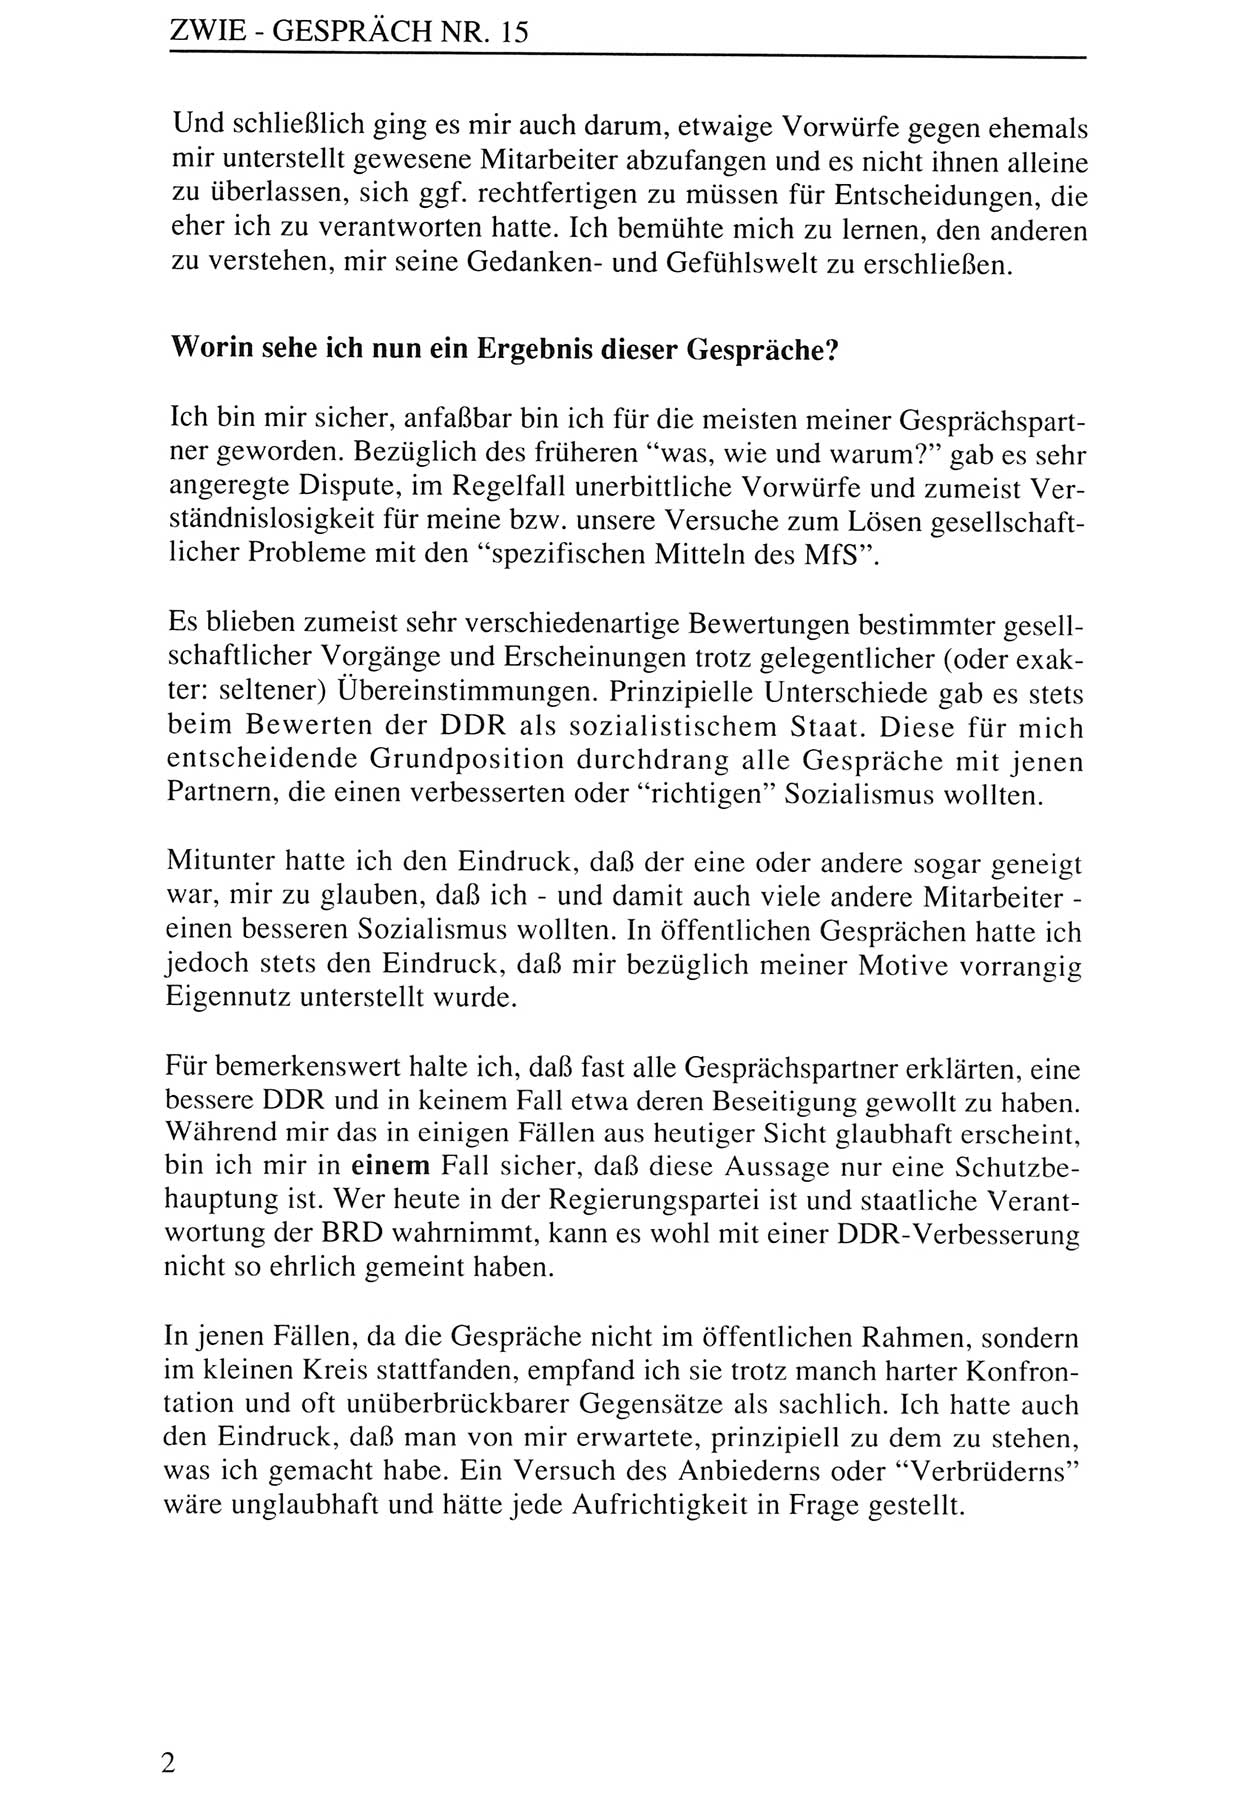 Zwie-Gespräch, Beiträge zur Aufarbeitung der Staatssicherheits-Vergangenheit [Deutsche Demokratische Republik (DDR)], Ausgabe Nr. 15, Berlin 1993, Seite 2 (Zwie-Gespr. Ausg. 15 1993, S. 2)